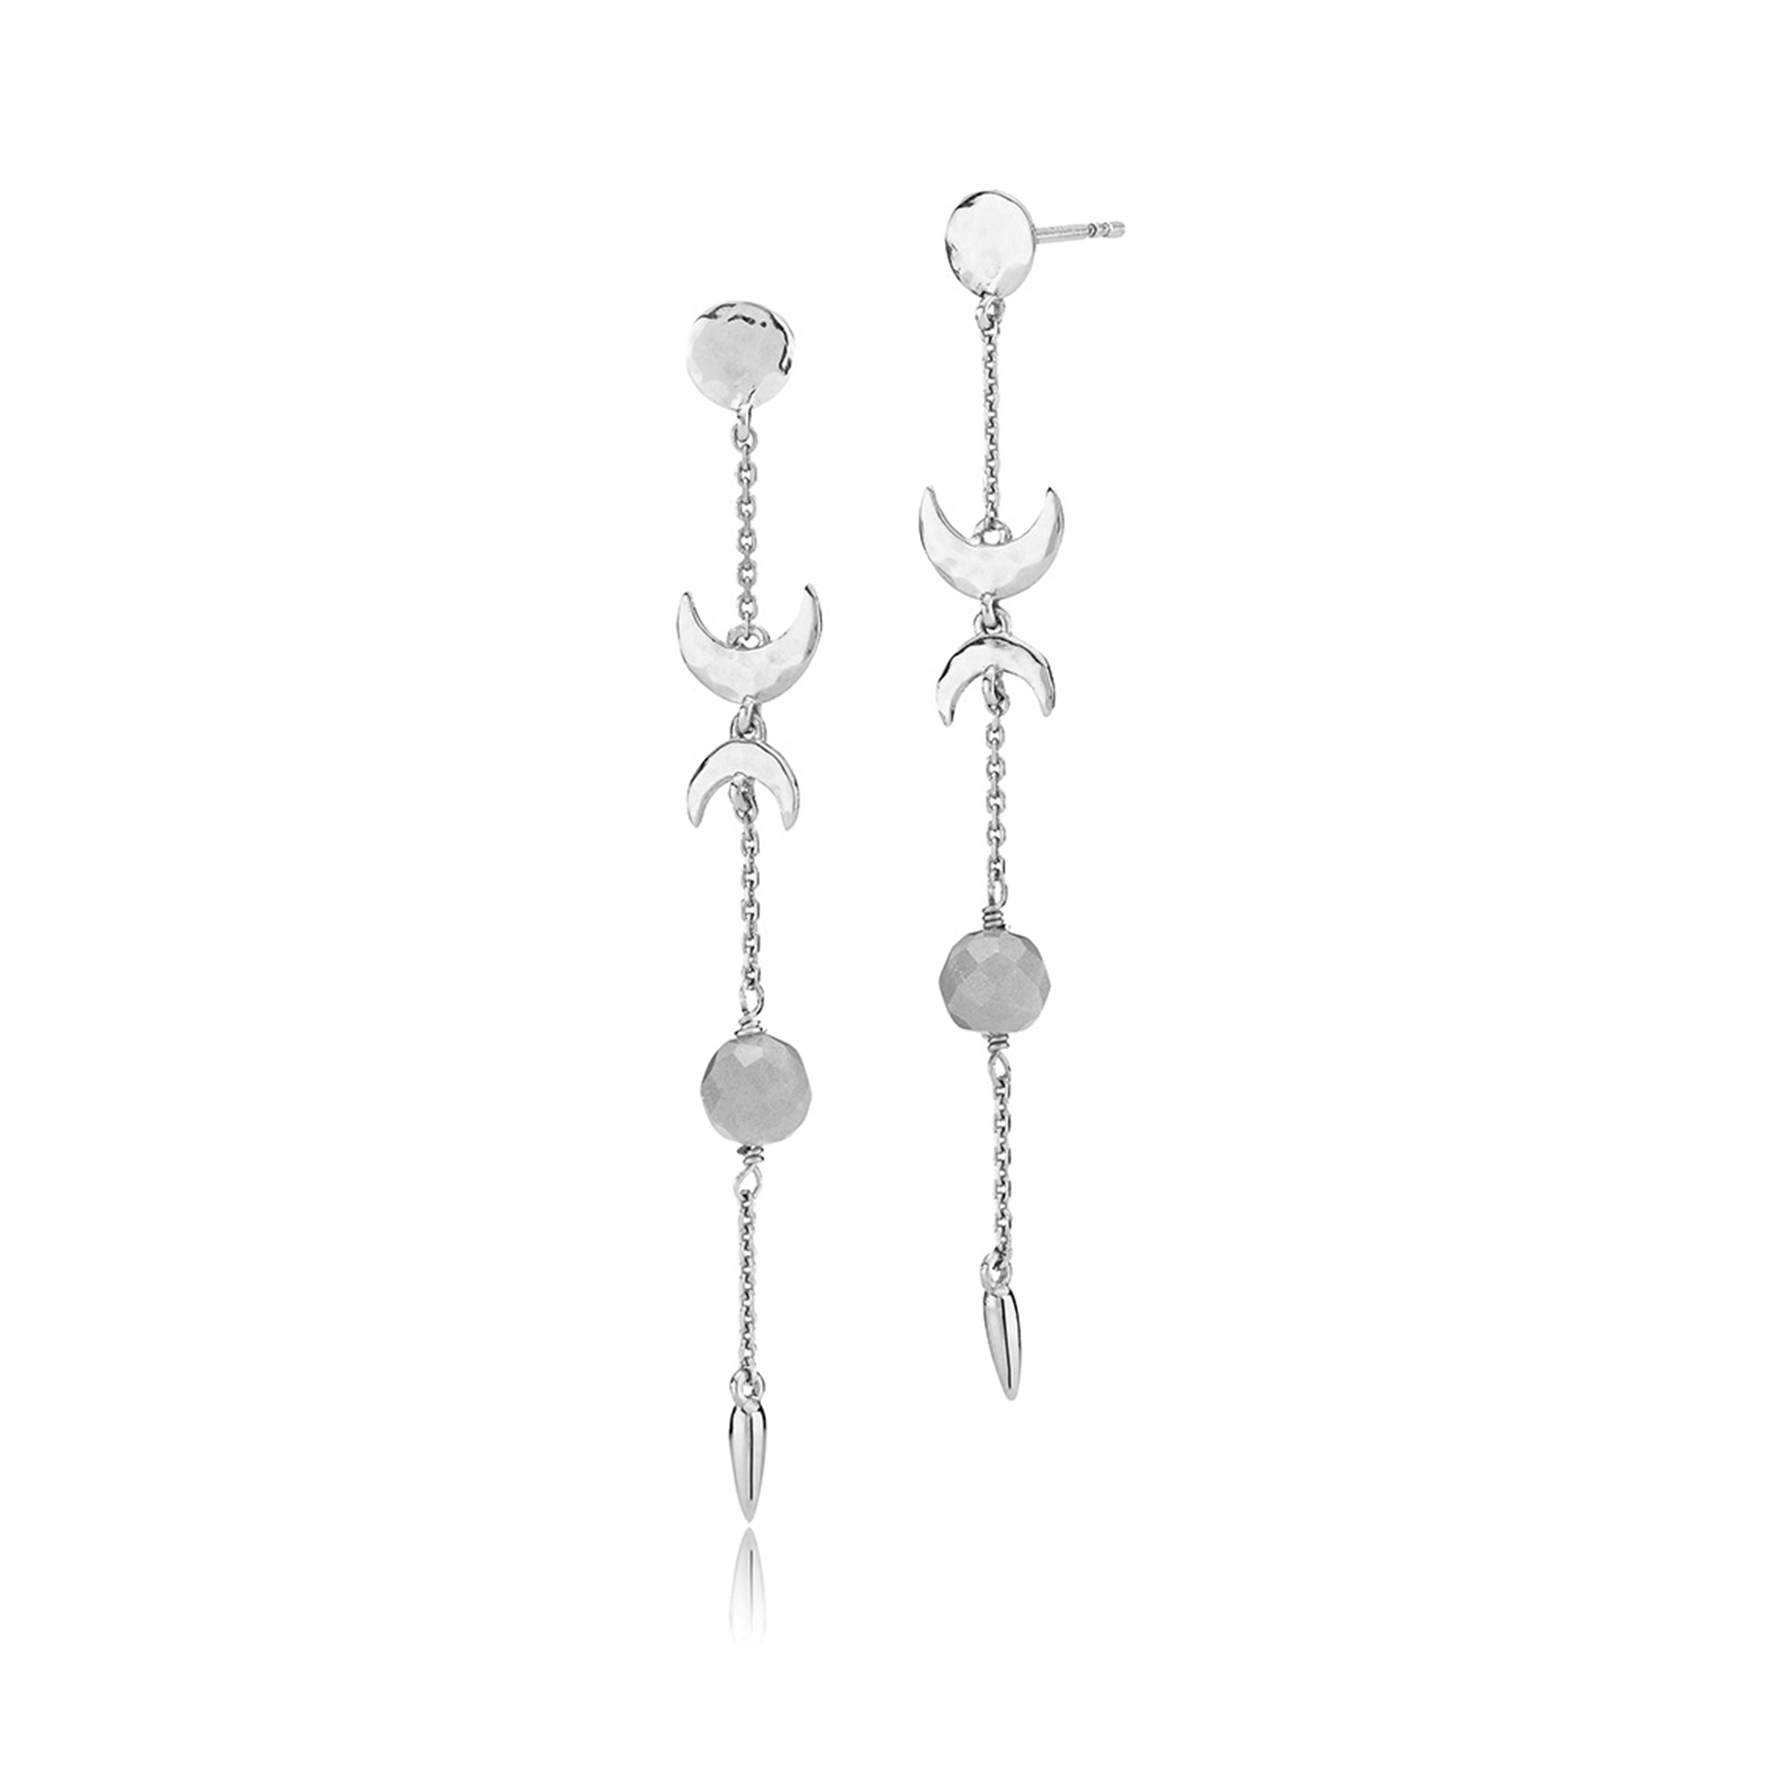 Mie Moltke Long Earrings With Pearls fra Izabel Camille i Sølv Sterling 925